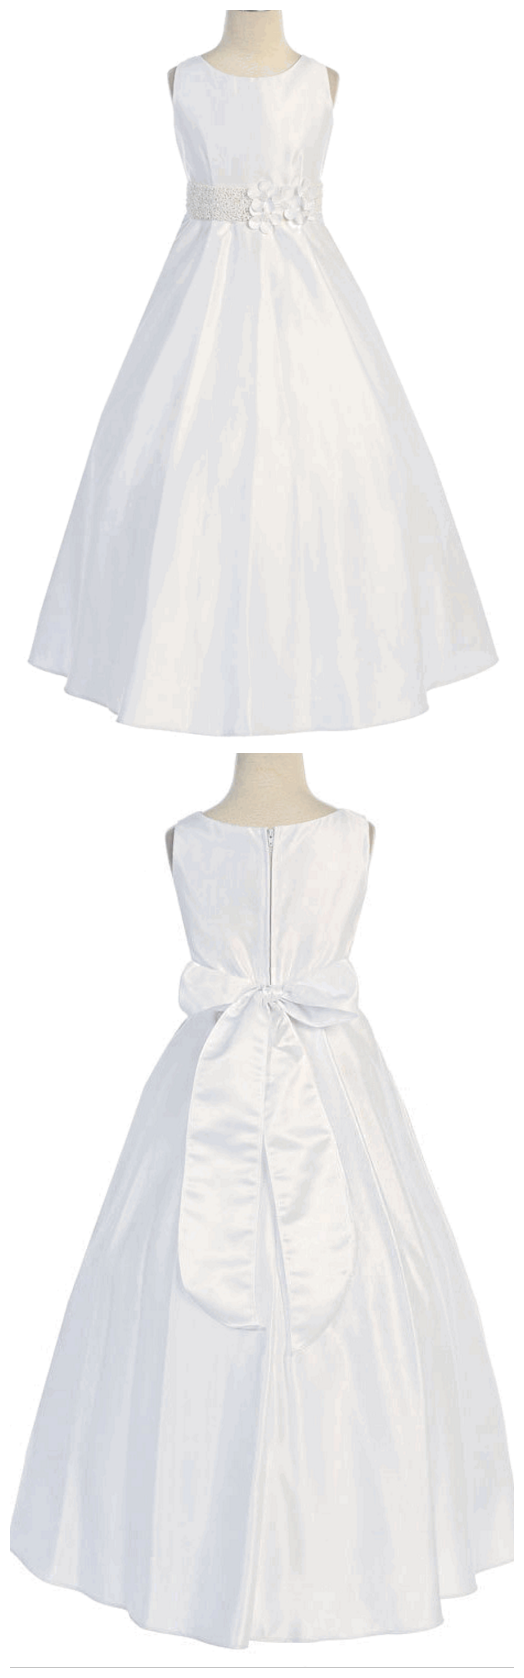 White Satin A-line Dress W/ Flowers & Beaded Waistline